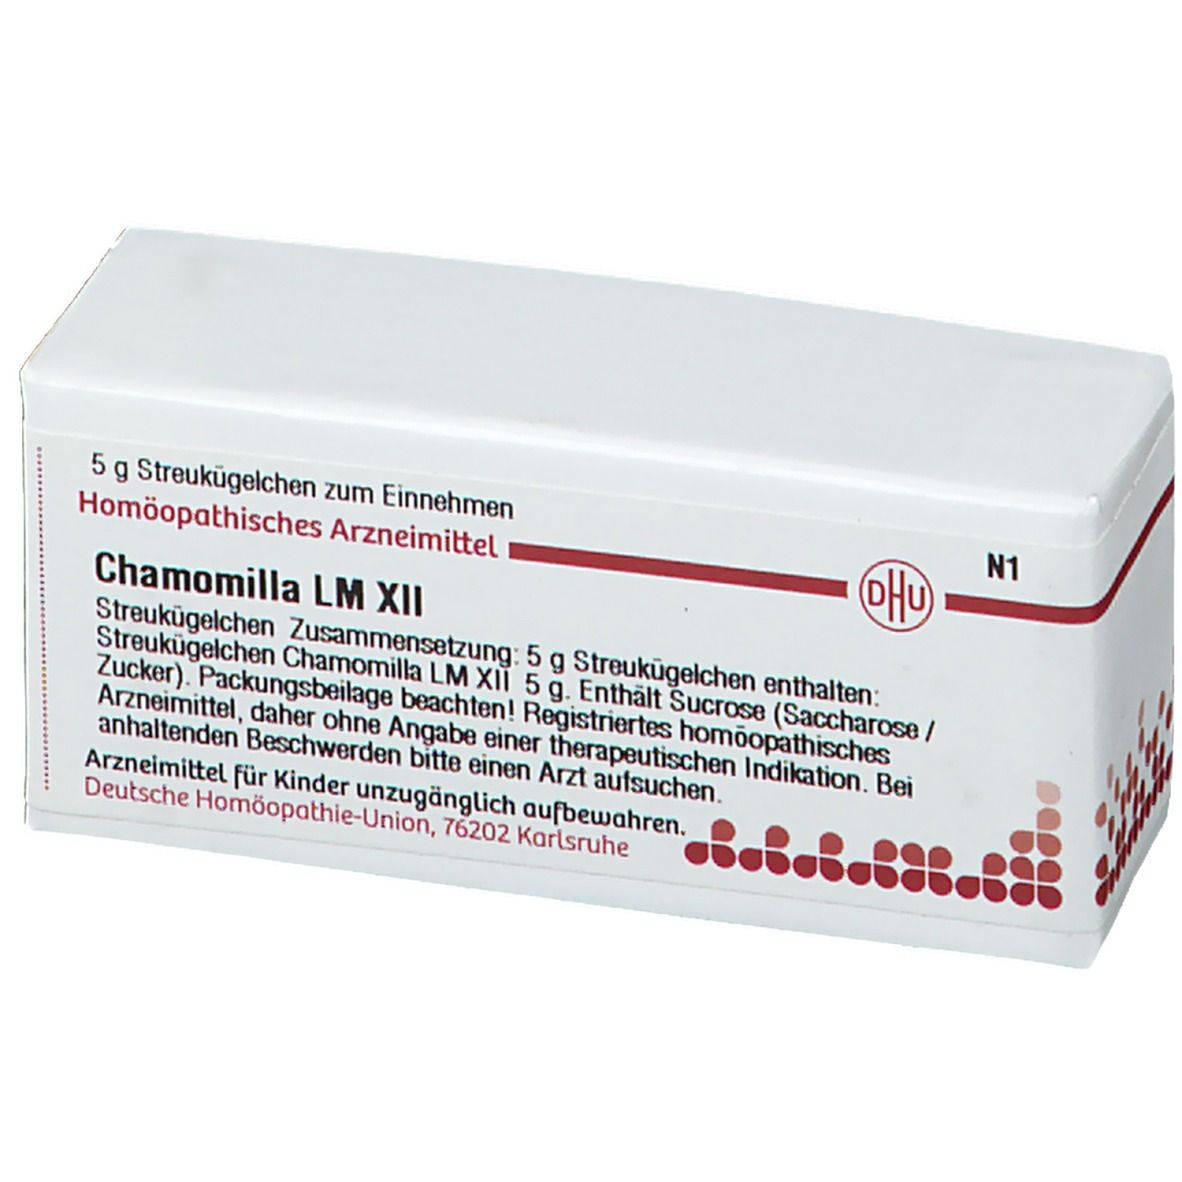 DHU Chamomilla LM XII